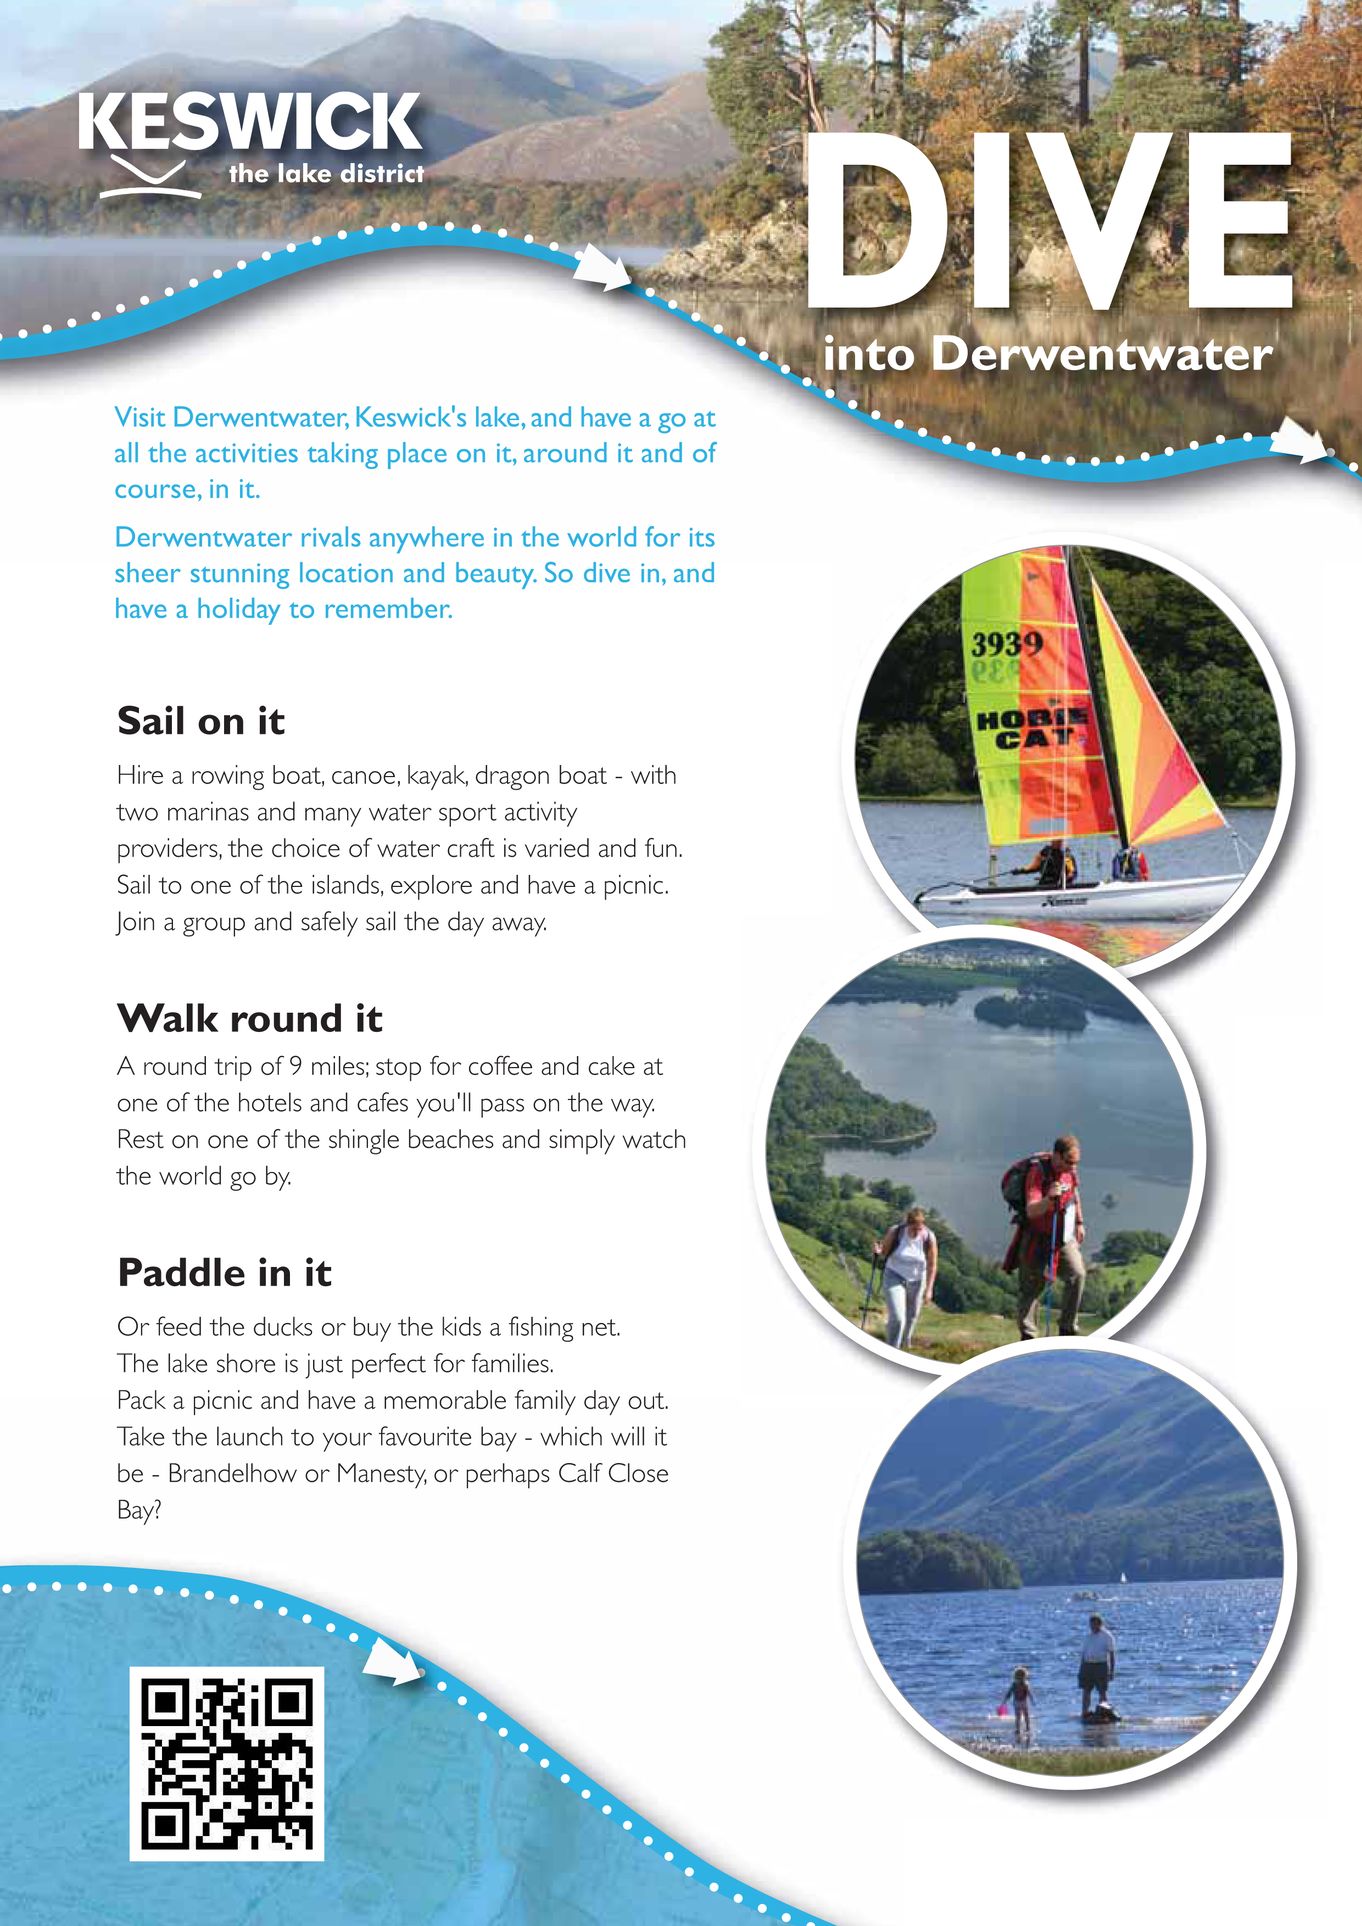 Activities on Derwentwater